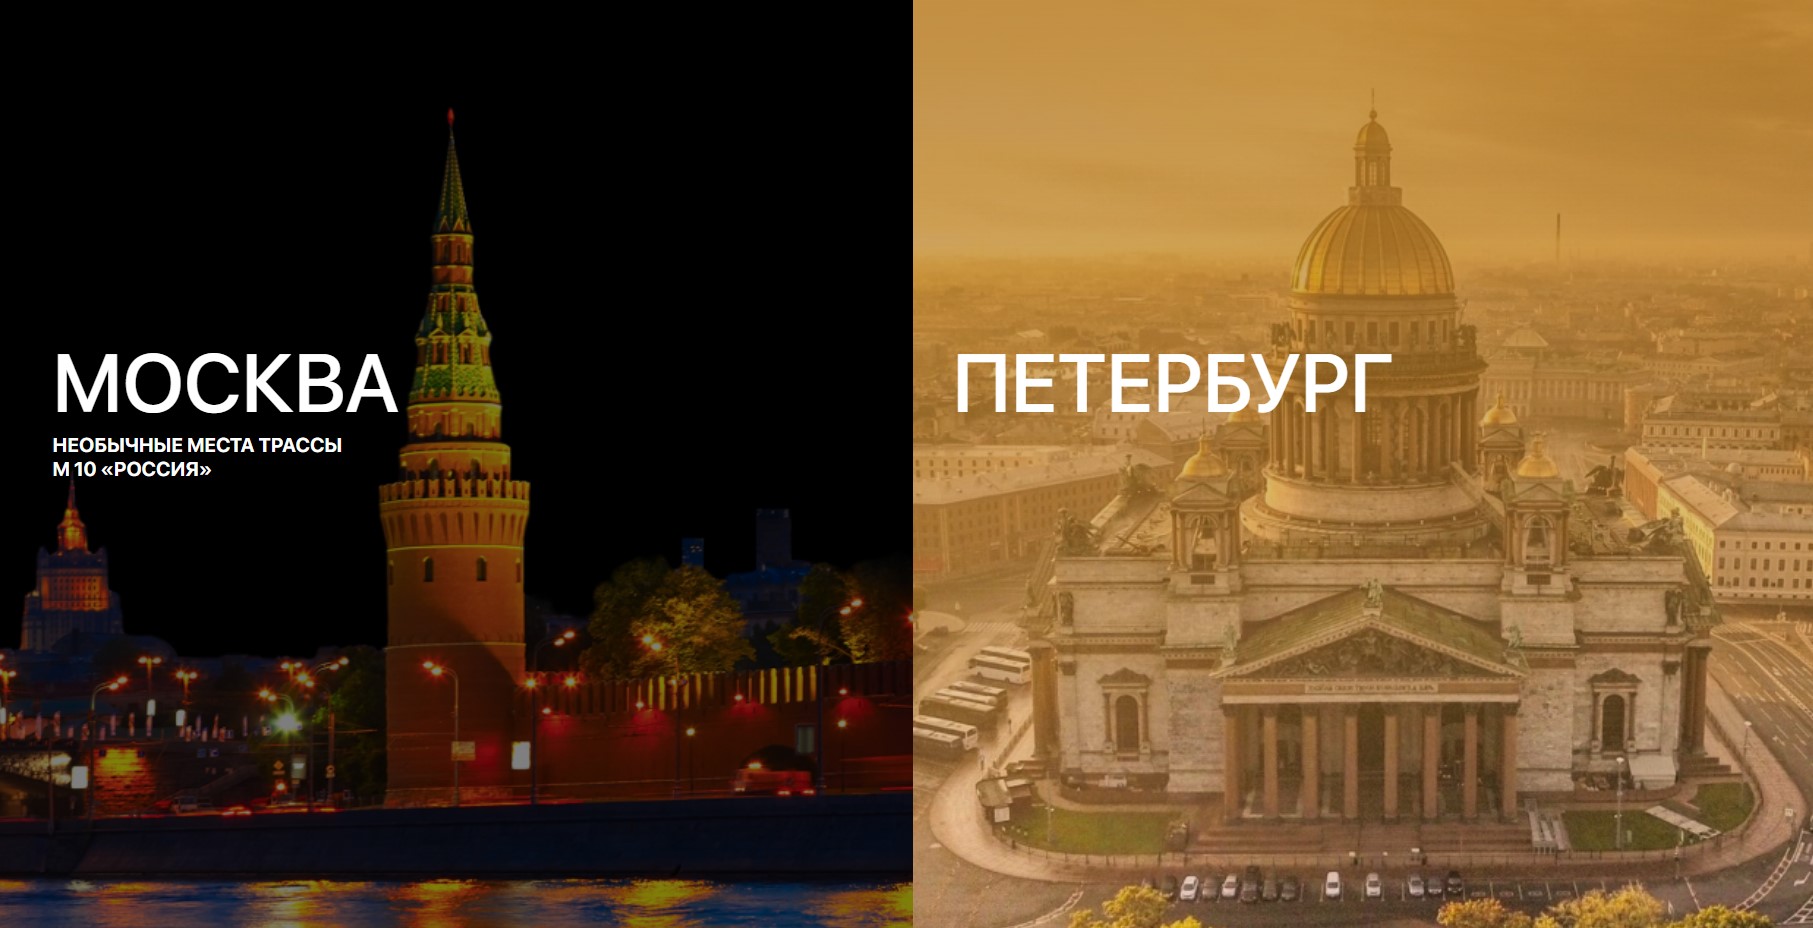 Роснефть запустила информационно-сервисную платформу для автотуристов «Горизонты России»